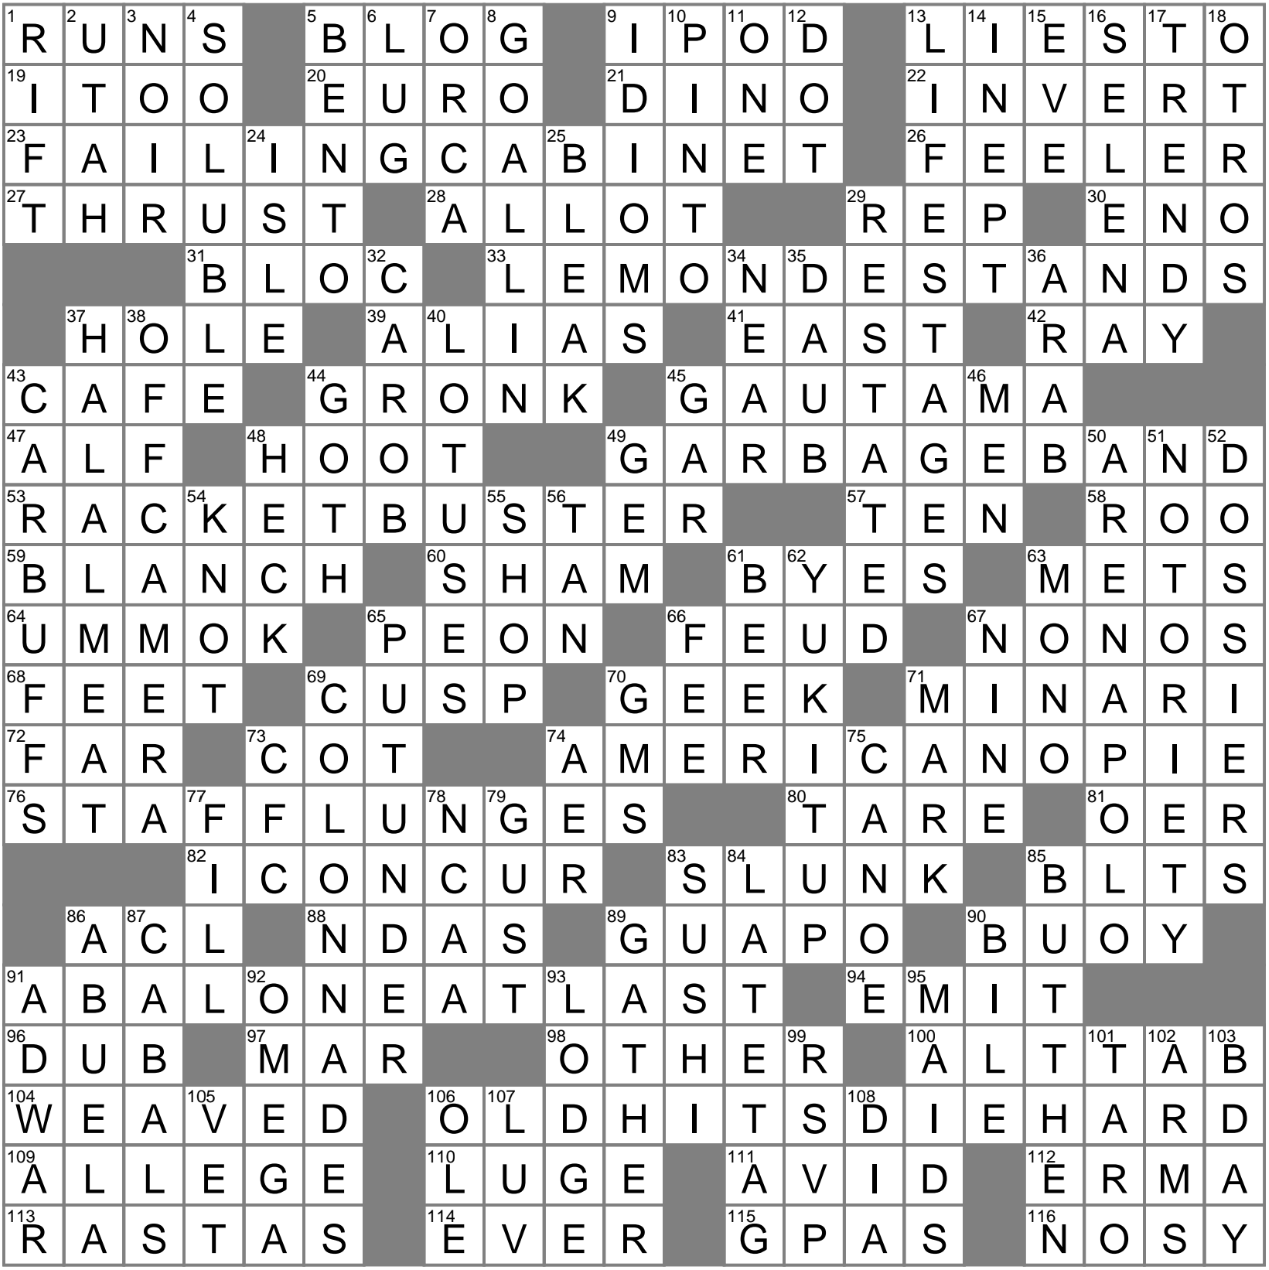 la-times-crossword-13-aug-23-sunday-laxcrossword